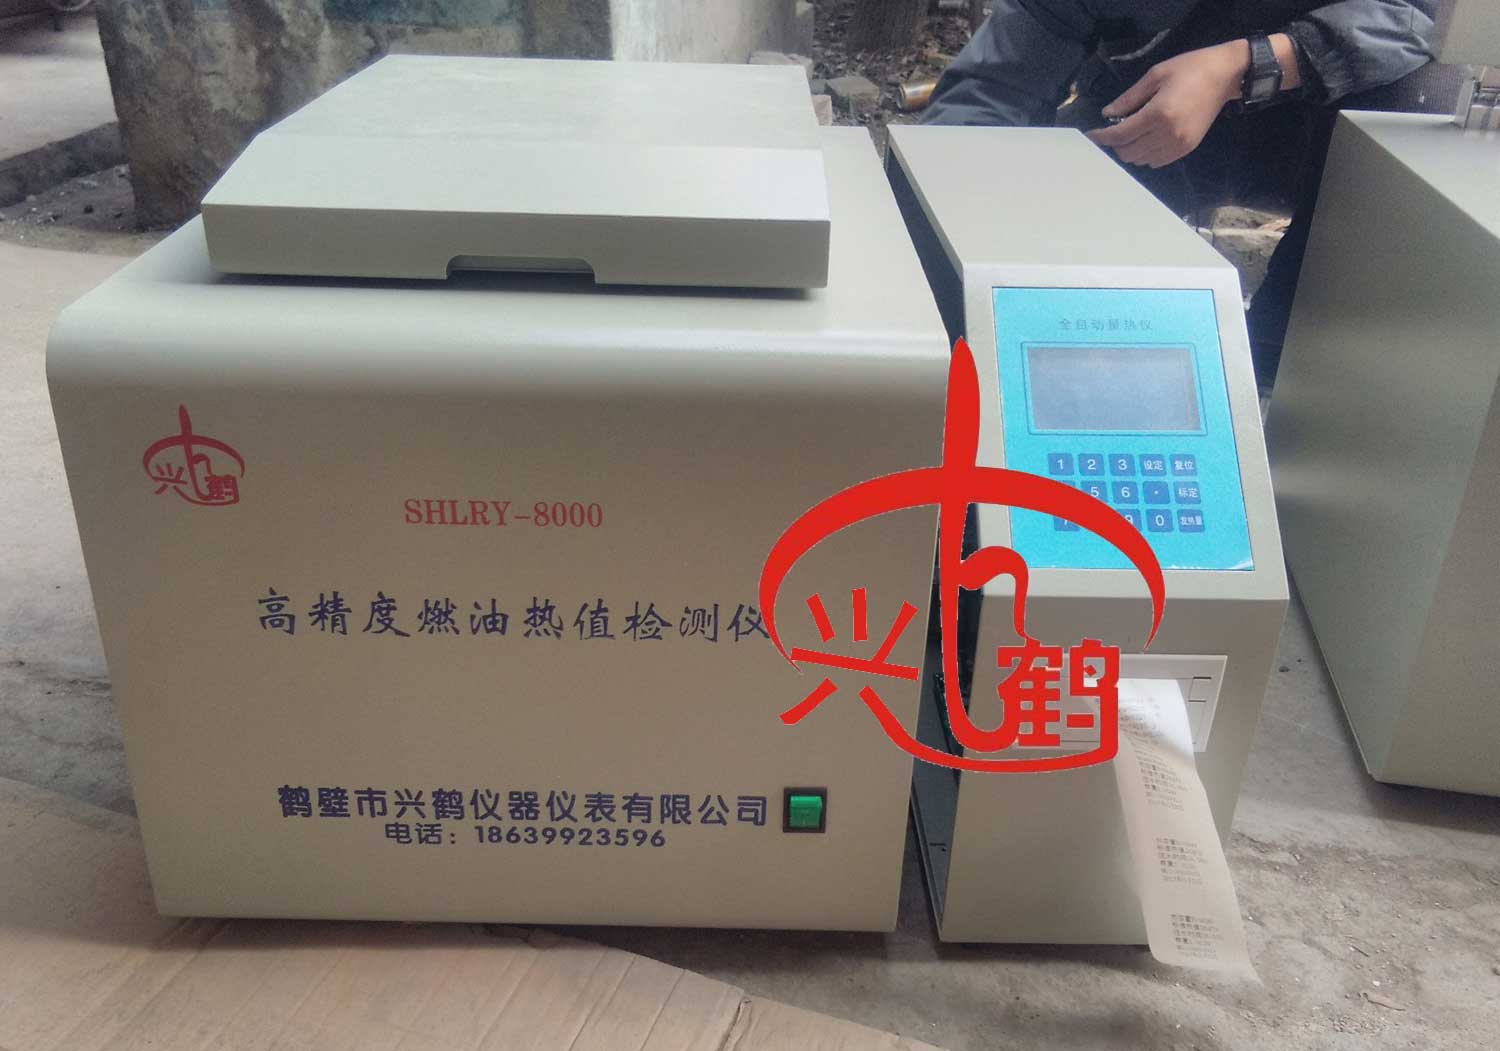 生产烧火油热值仪器的厂家兴鹤热值仪公司油热值化验机